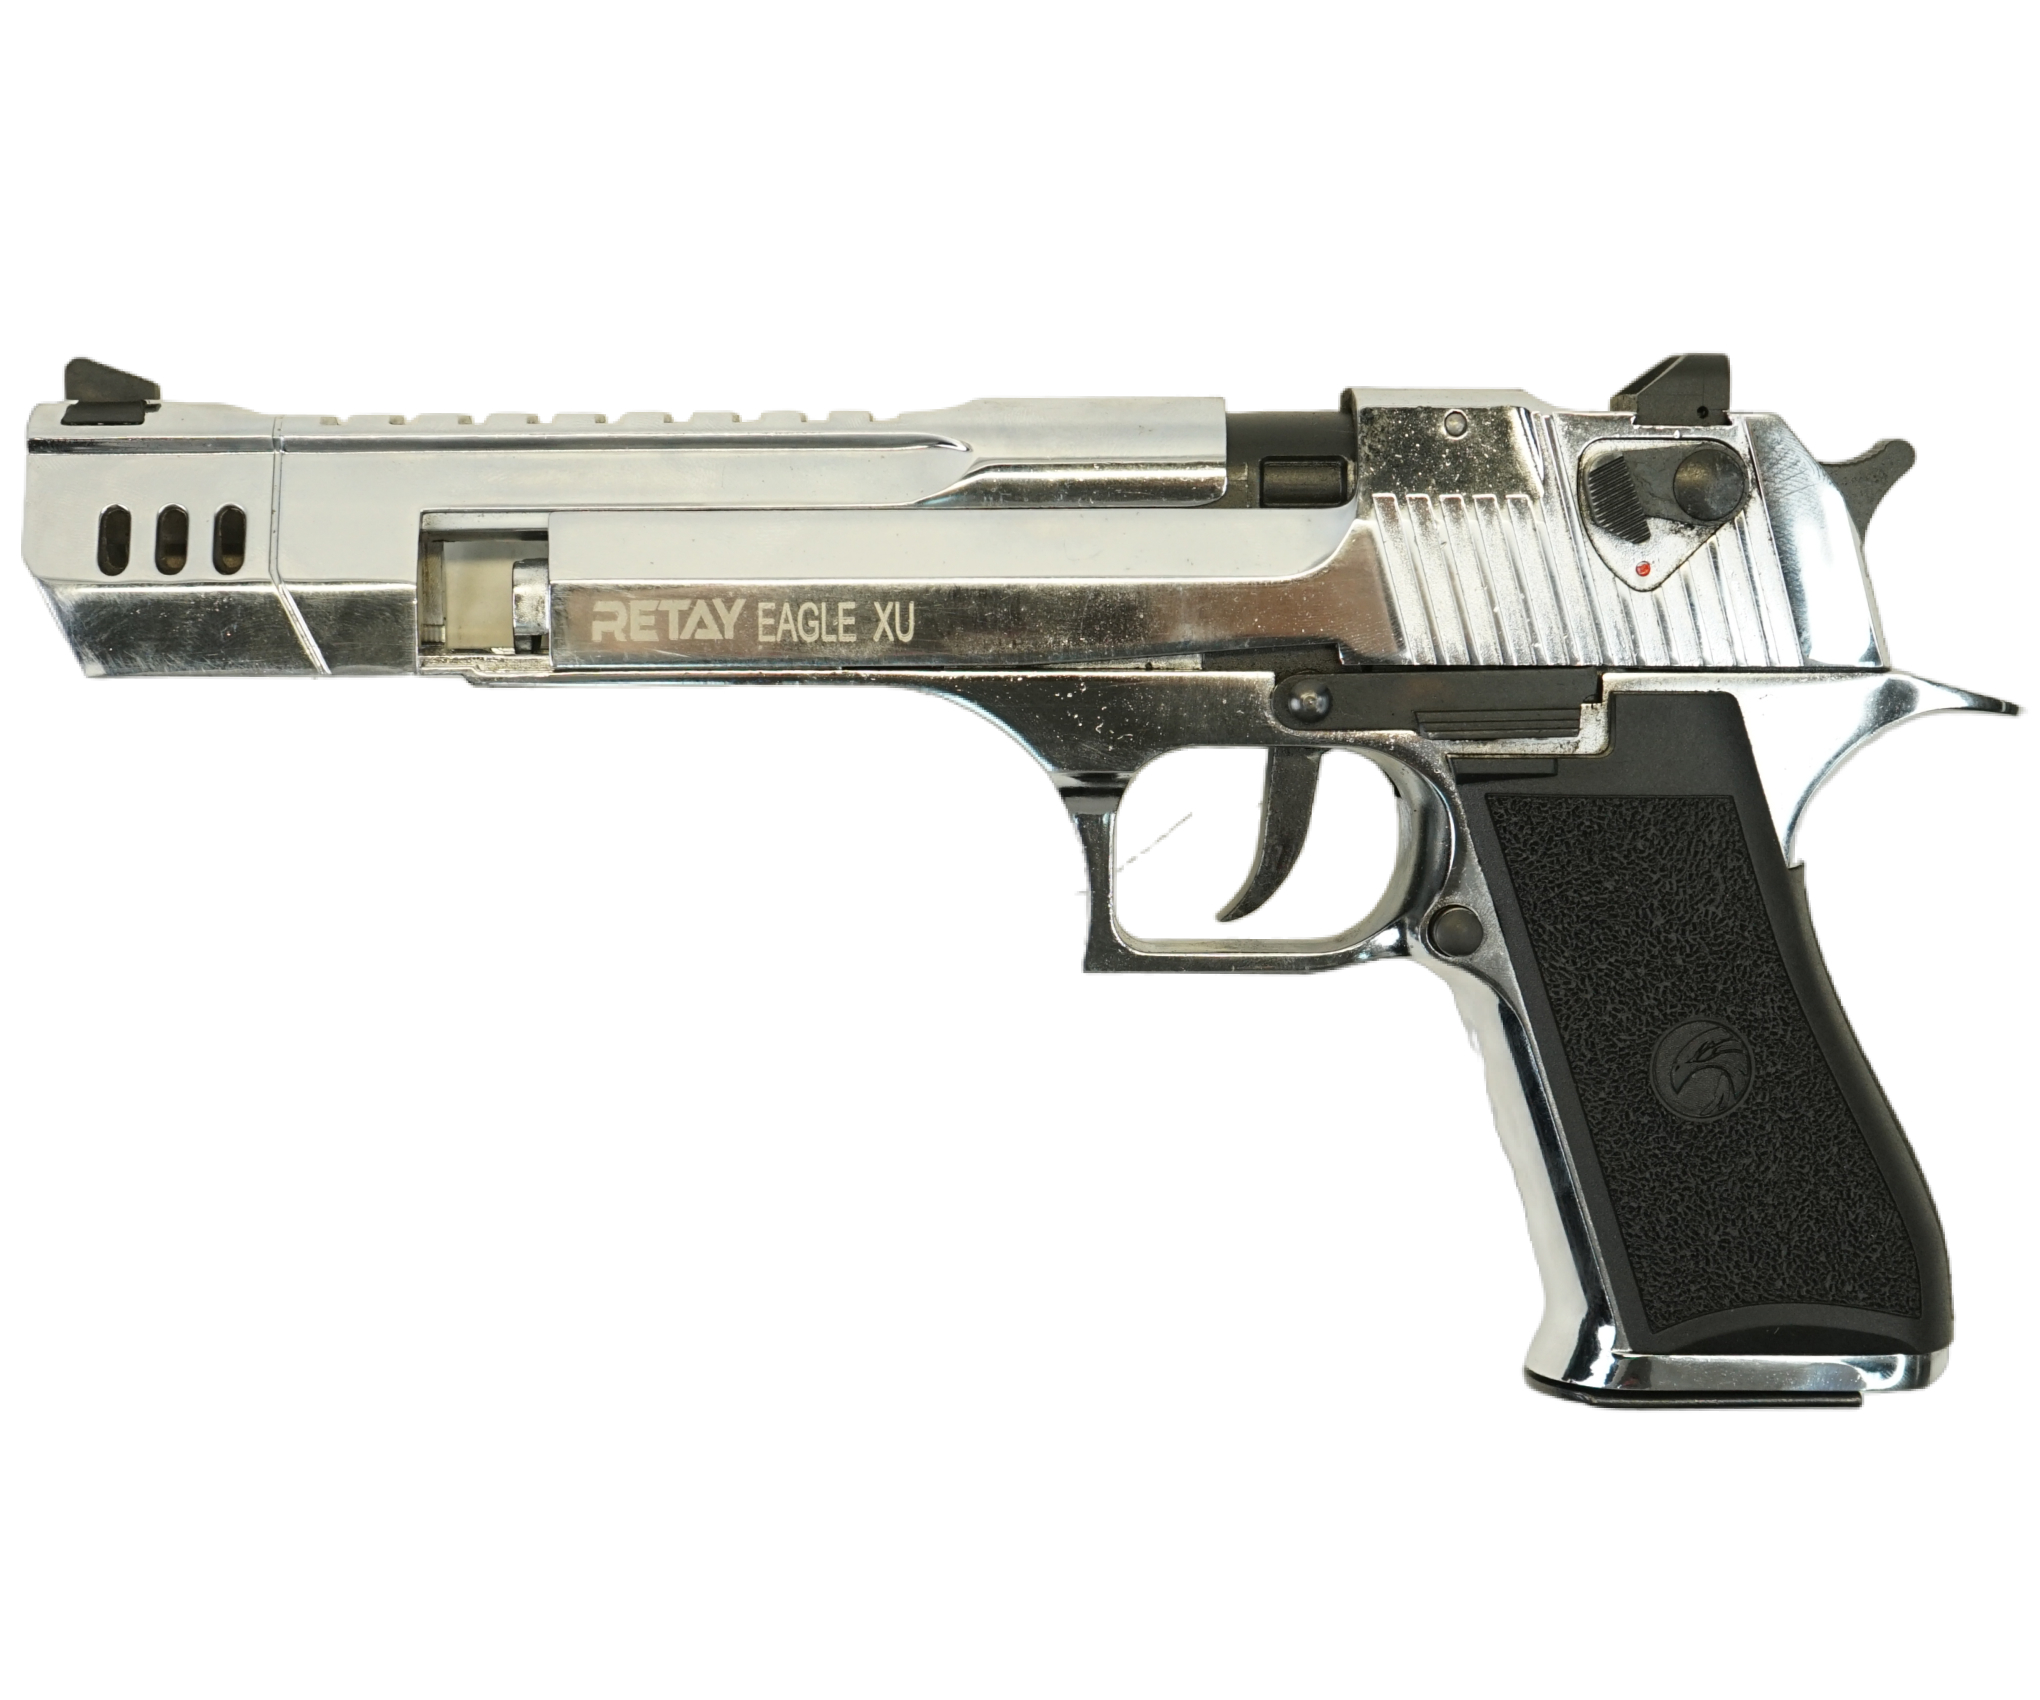 |Уценка| Охолощенный СХП пистолет Retay Eagle XU (Desert Eagle, длинный) 9mm P.A.K Nickel (№ 00204446-408-УЦ)